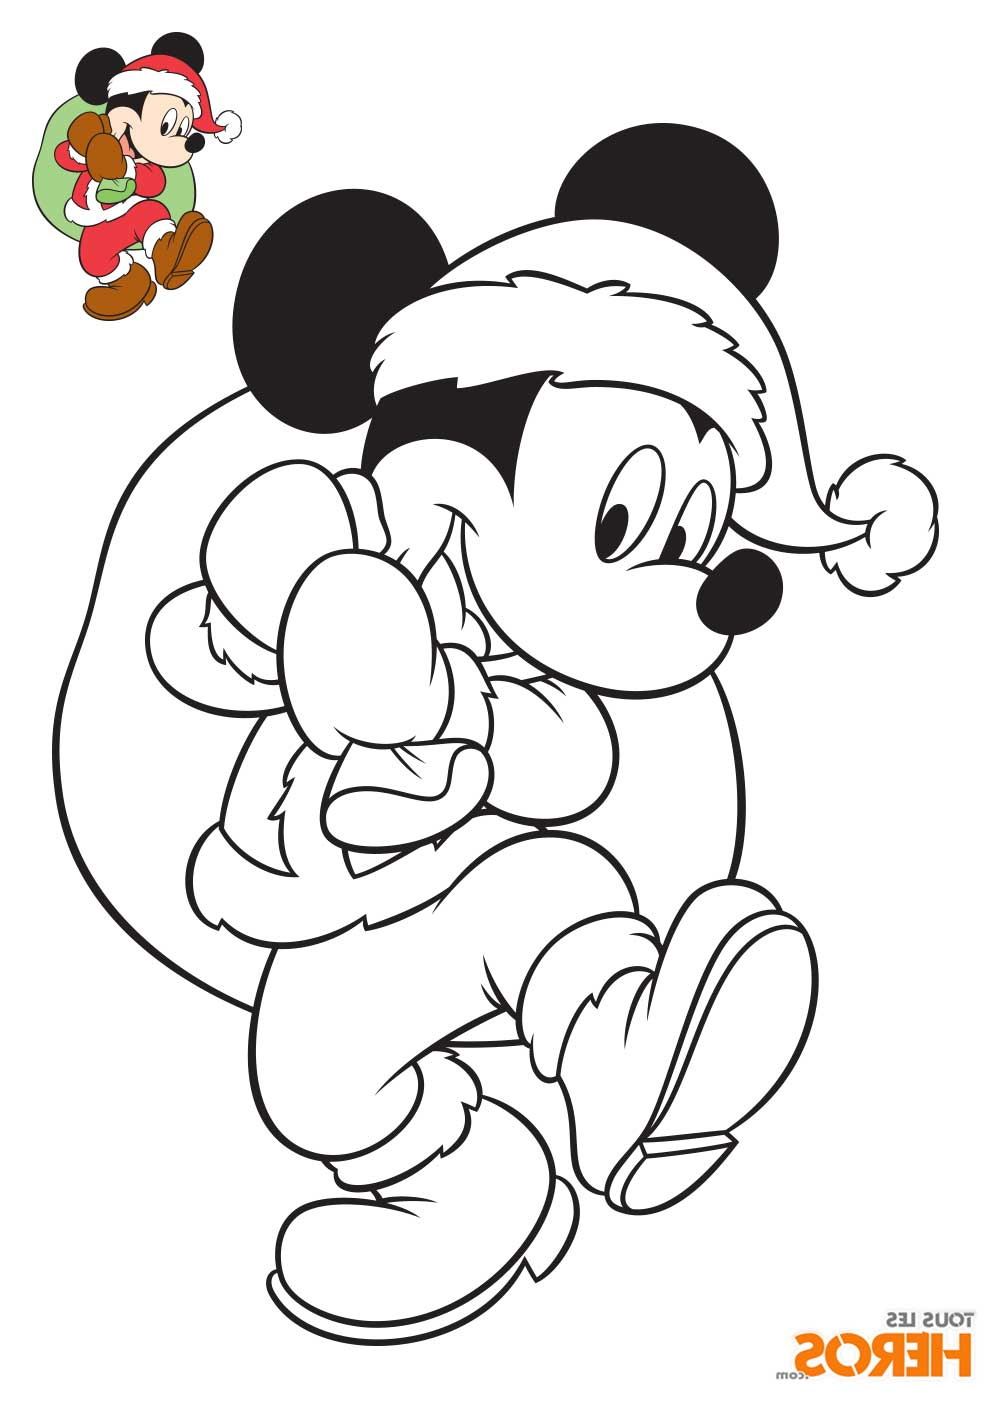 Coloriage Minnie Et Mickey Nouveau Image Coloriages Mickey Et Minnie Spécial Noël Gratuits Sur Le